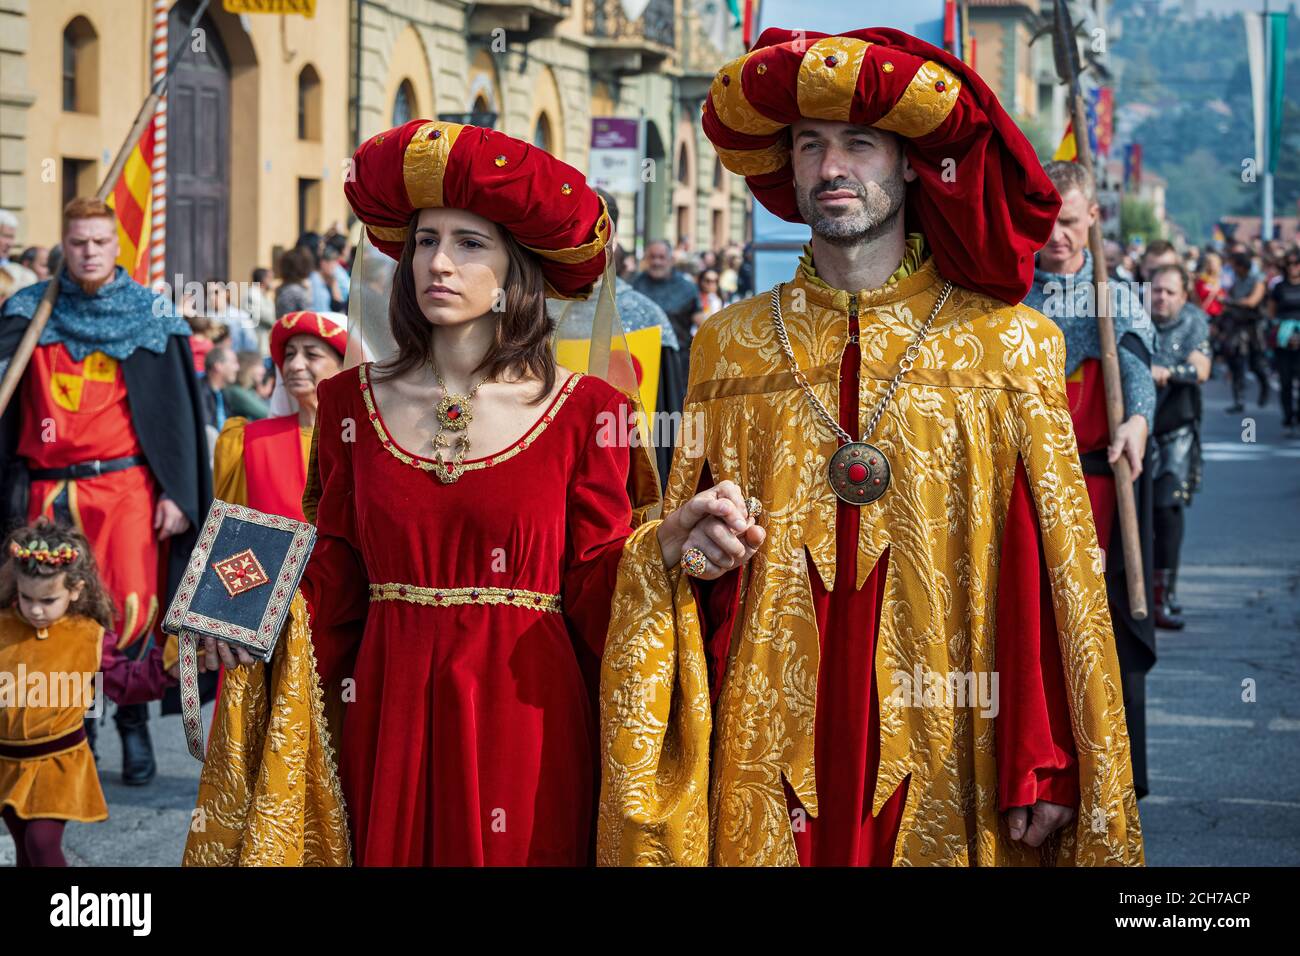 Partecipanti a abiti storici sulla Parata medievale - parte tradizionale delle celebrazioni durante il festival annuale del Tartufo Bianco ad Alba, nel Nord Italia. Foto Stock